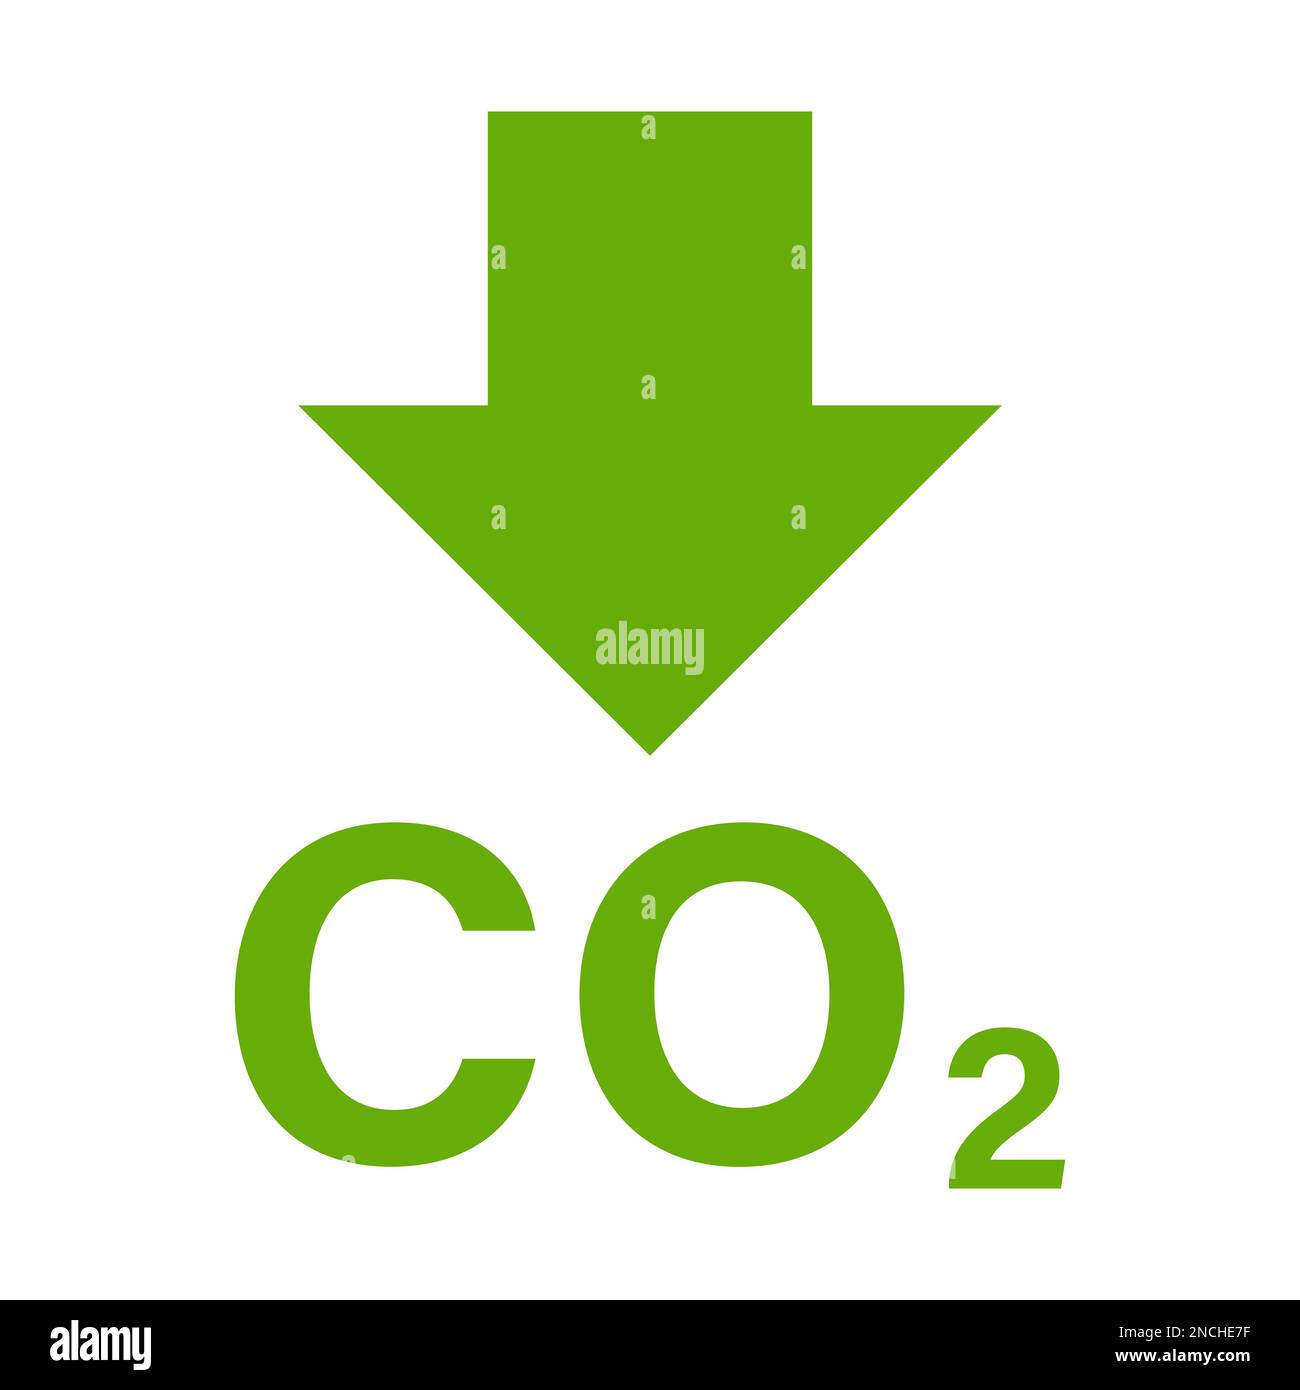 Symbol zur Reduzierung von CO2-Emissionen Vektor Klimaschutz Zeichen für Grafikdesign, Logo, Website, soziale Medien, mobile App, darstellung der benutzeroberfläche Stock Vektor